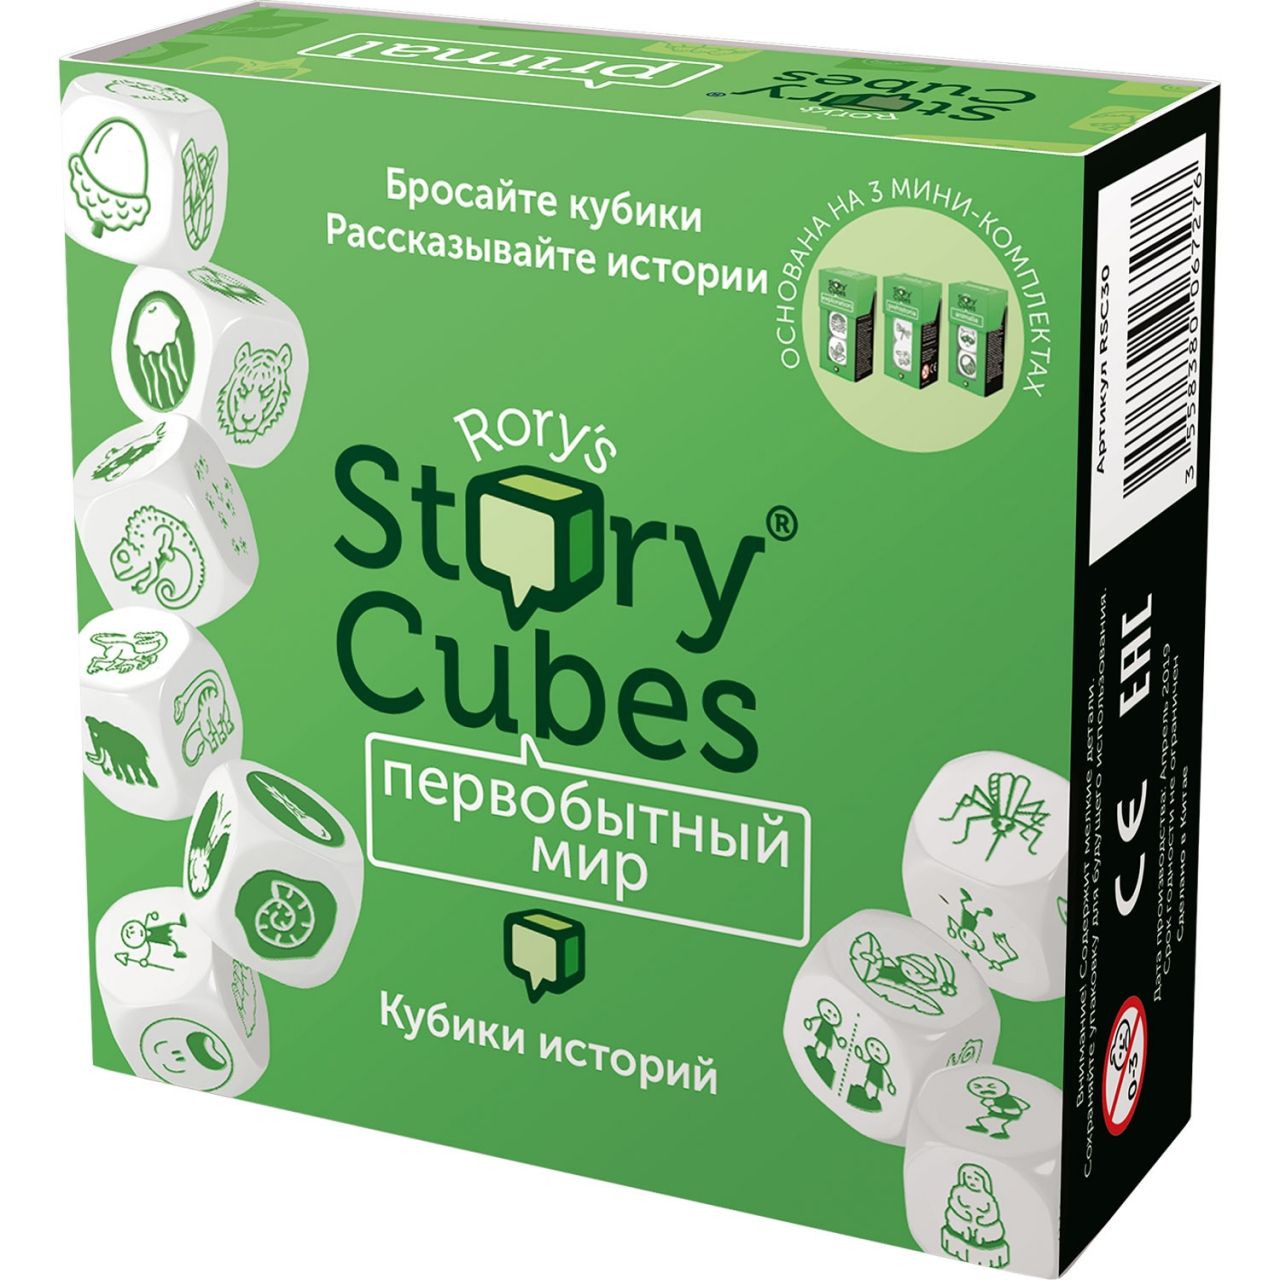 Настольная игра RORYS STORY CUBES RSC30 кубики историй Первобытный мир rubiks кубики историй действия